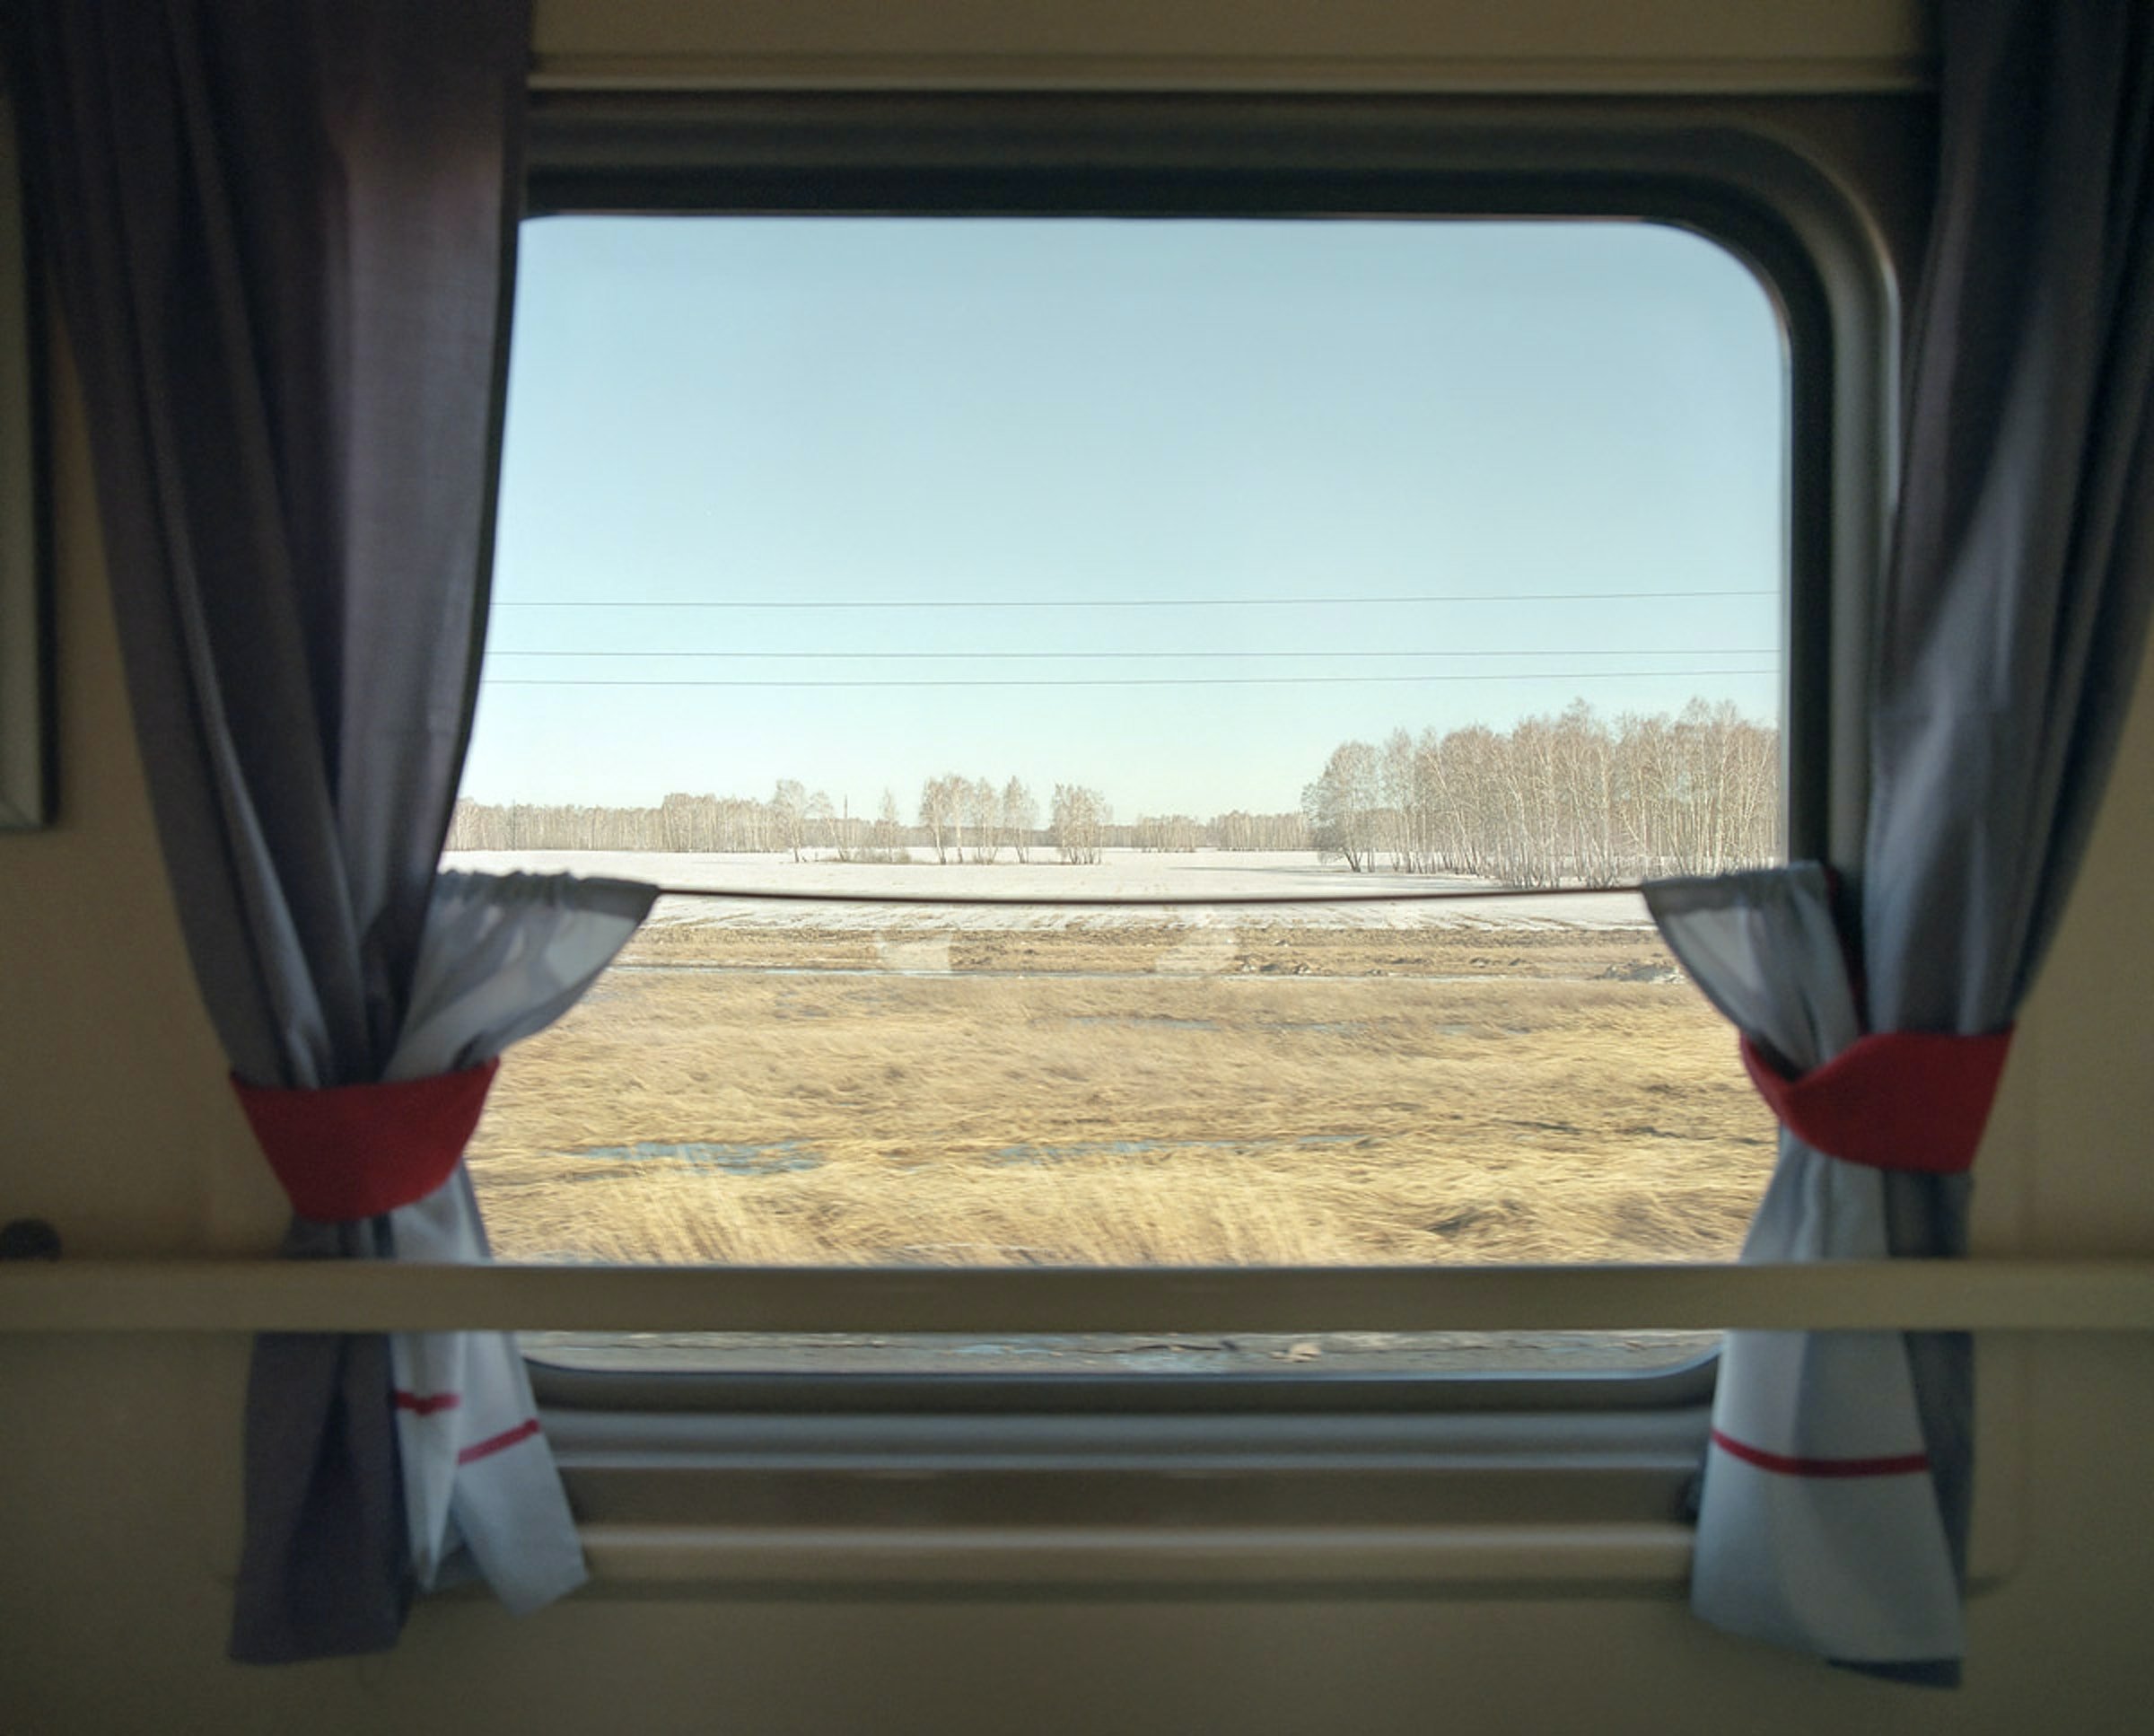 Шторки в вагонах. Окно поезда. Вид из окна поезда. Окно вагона. Вид с окна поезда.